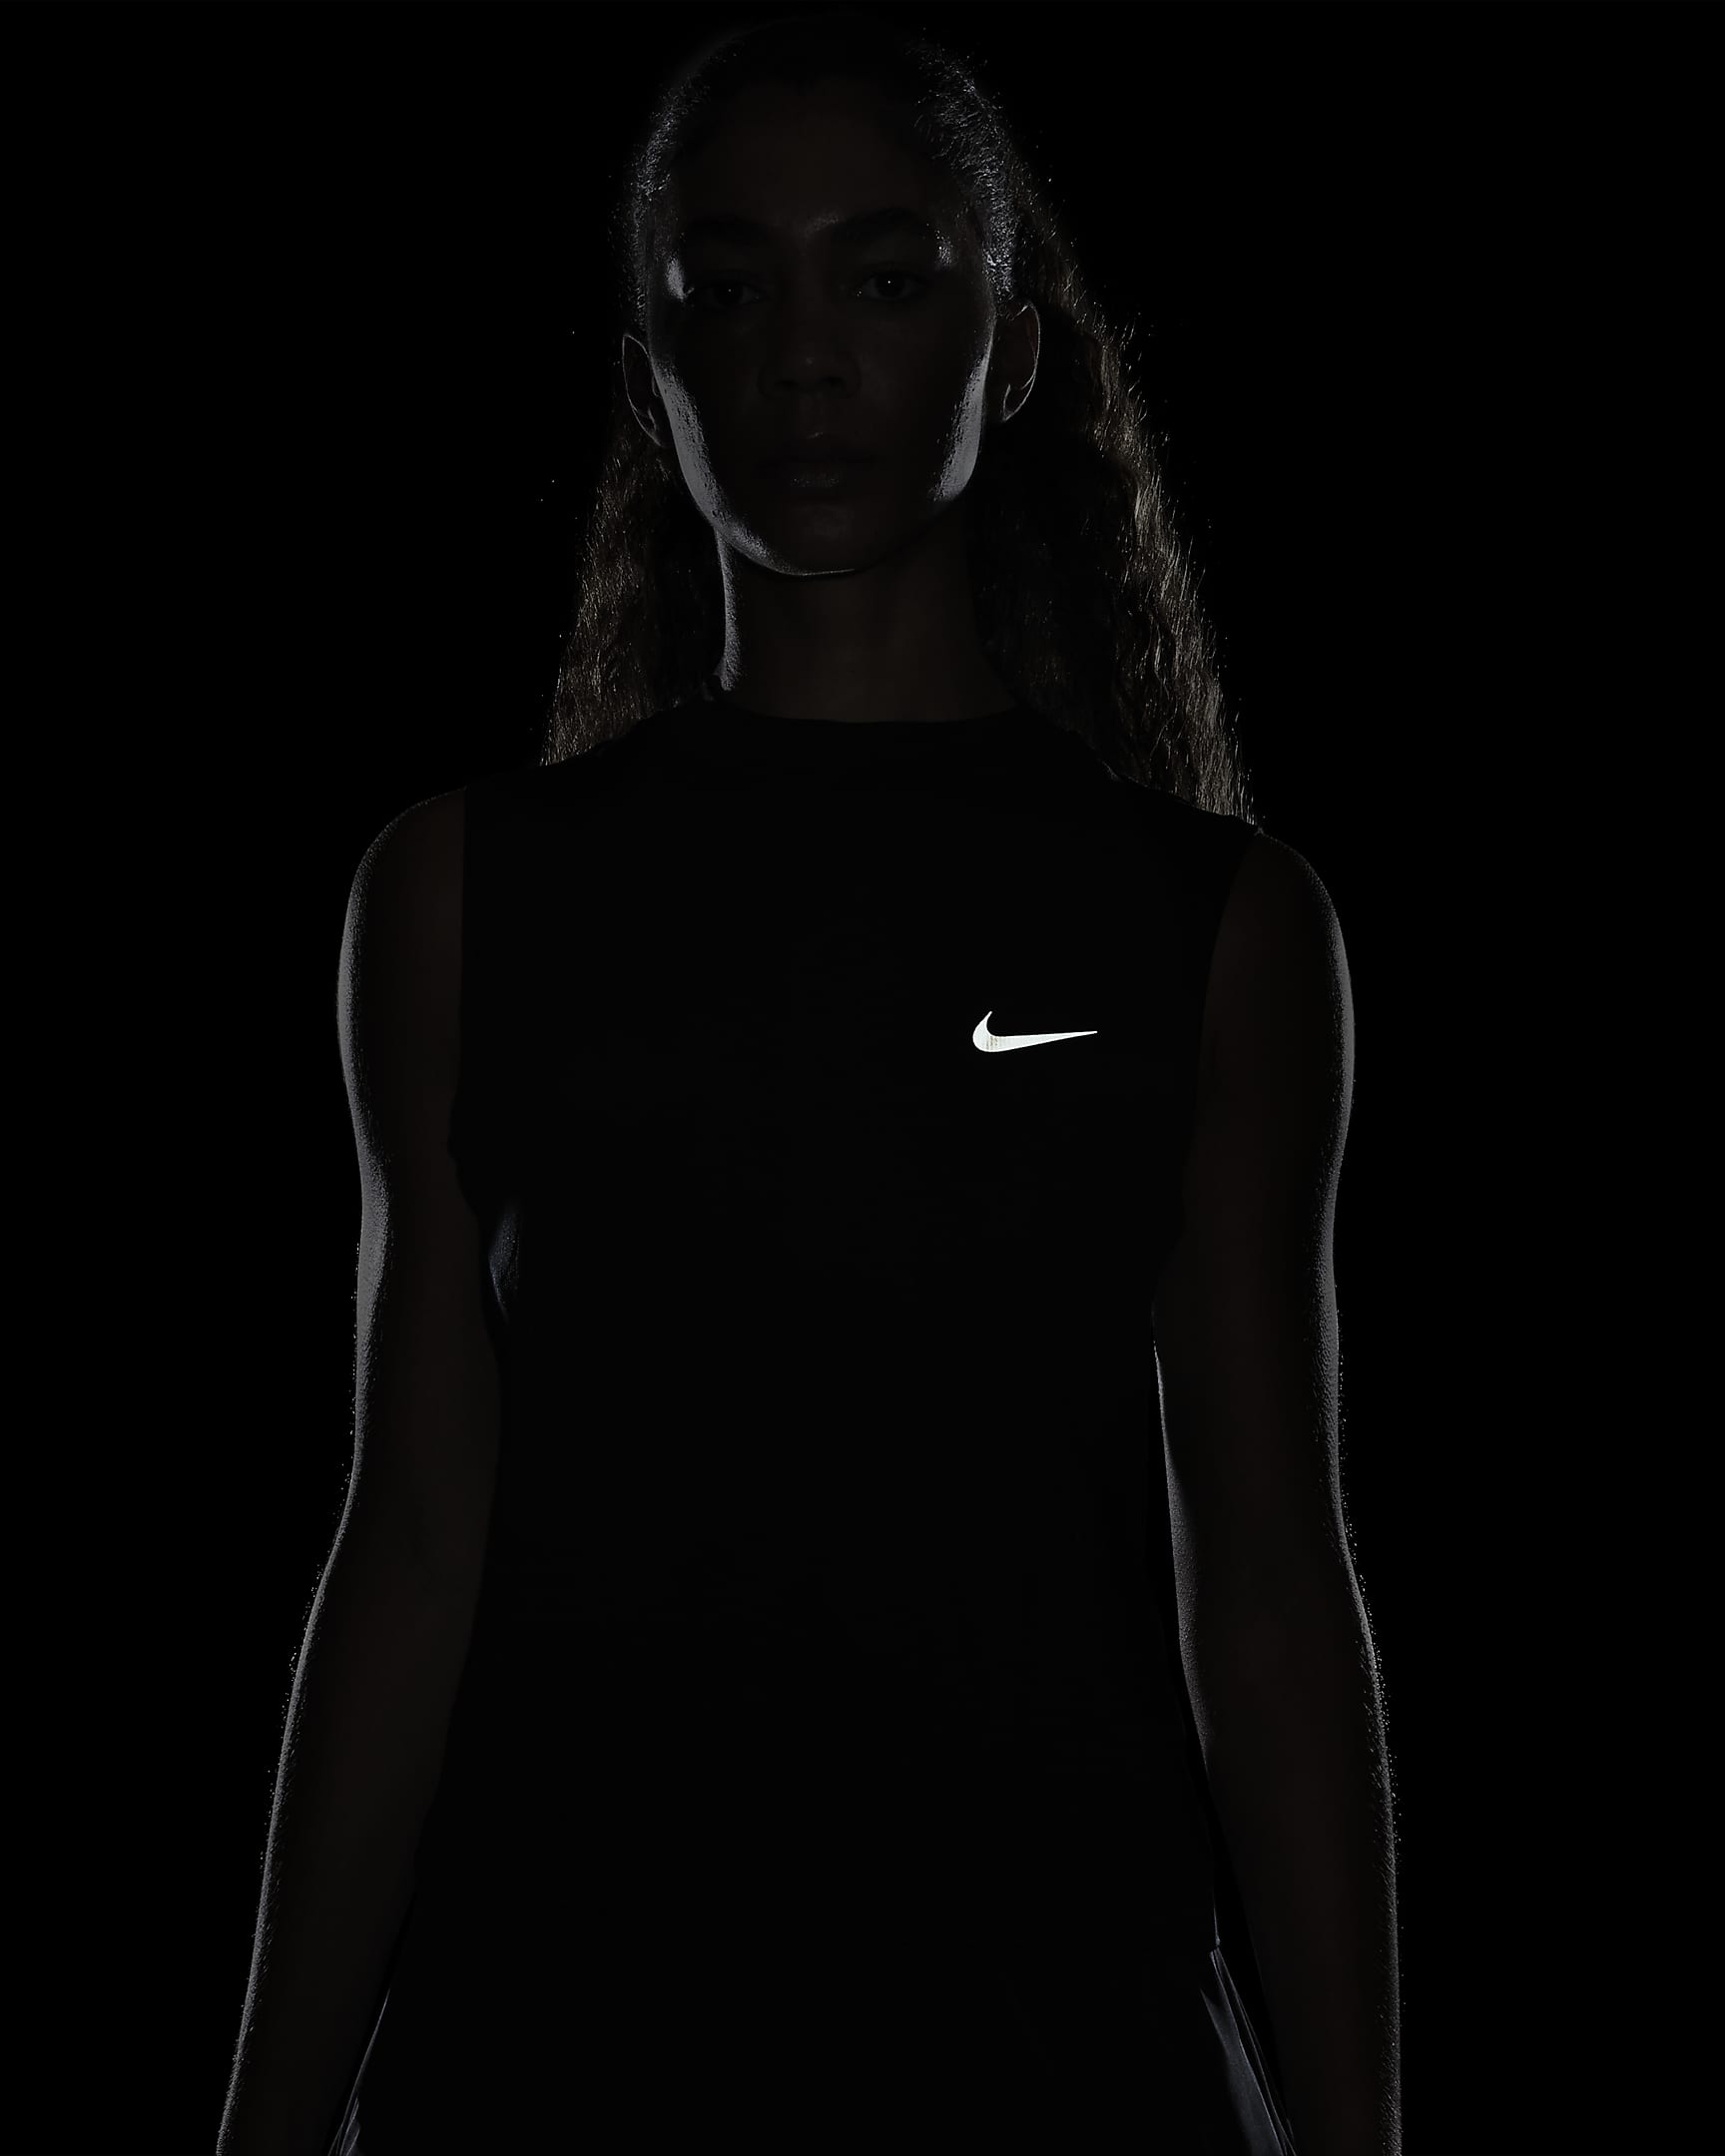 Nike Running Division Women's Tank Top. Nike UK